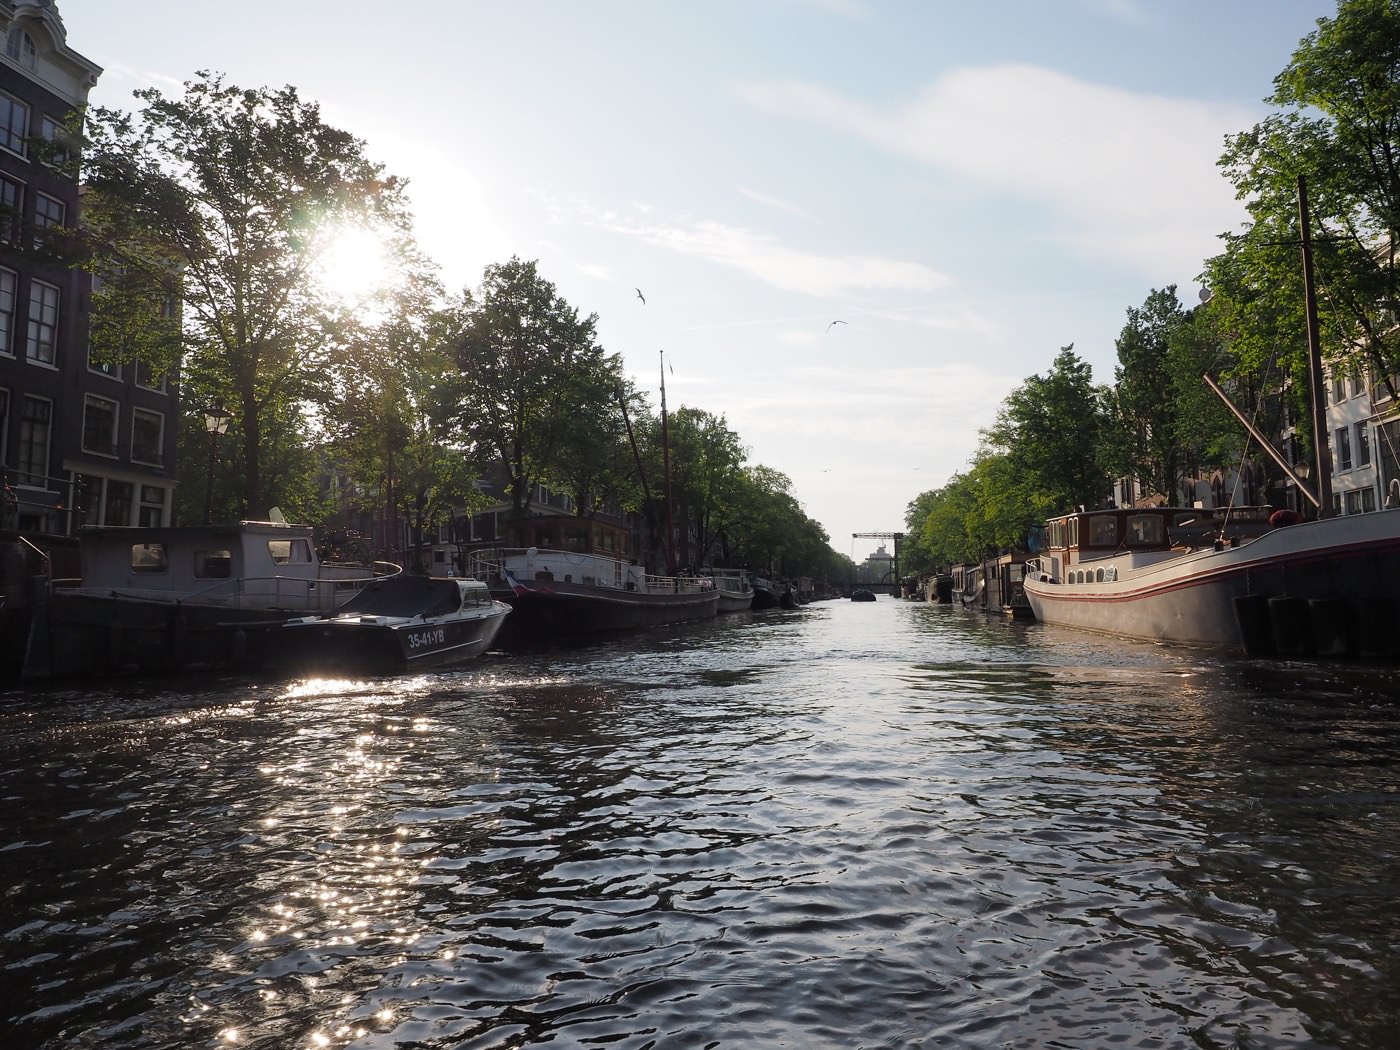 阿姆斯特丹景點 Lovers Canal Cruises 中文導覽 一小時運河遊船 - 一口冒險 Bitesized Adventure